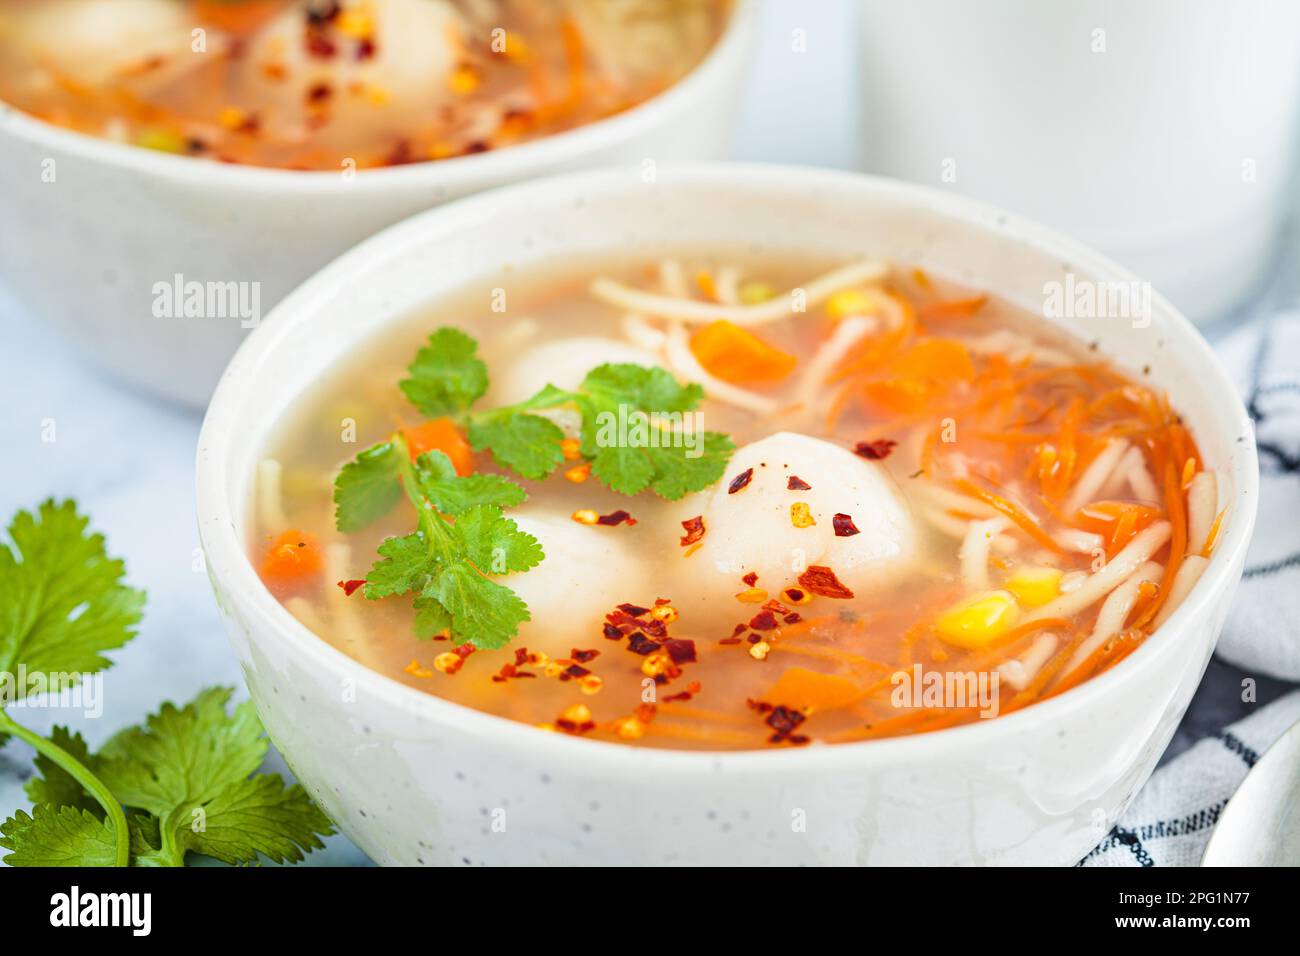 Kartoffelkugelsuppe mit Nudeln und Gemüse in einer weißen Schüssel, weißer Hintergrund, Nahaufnahme. Veganes Speisekonzept. Stockfoto